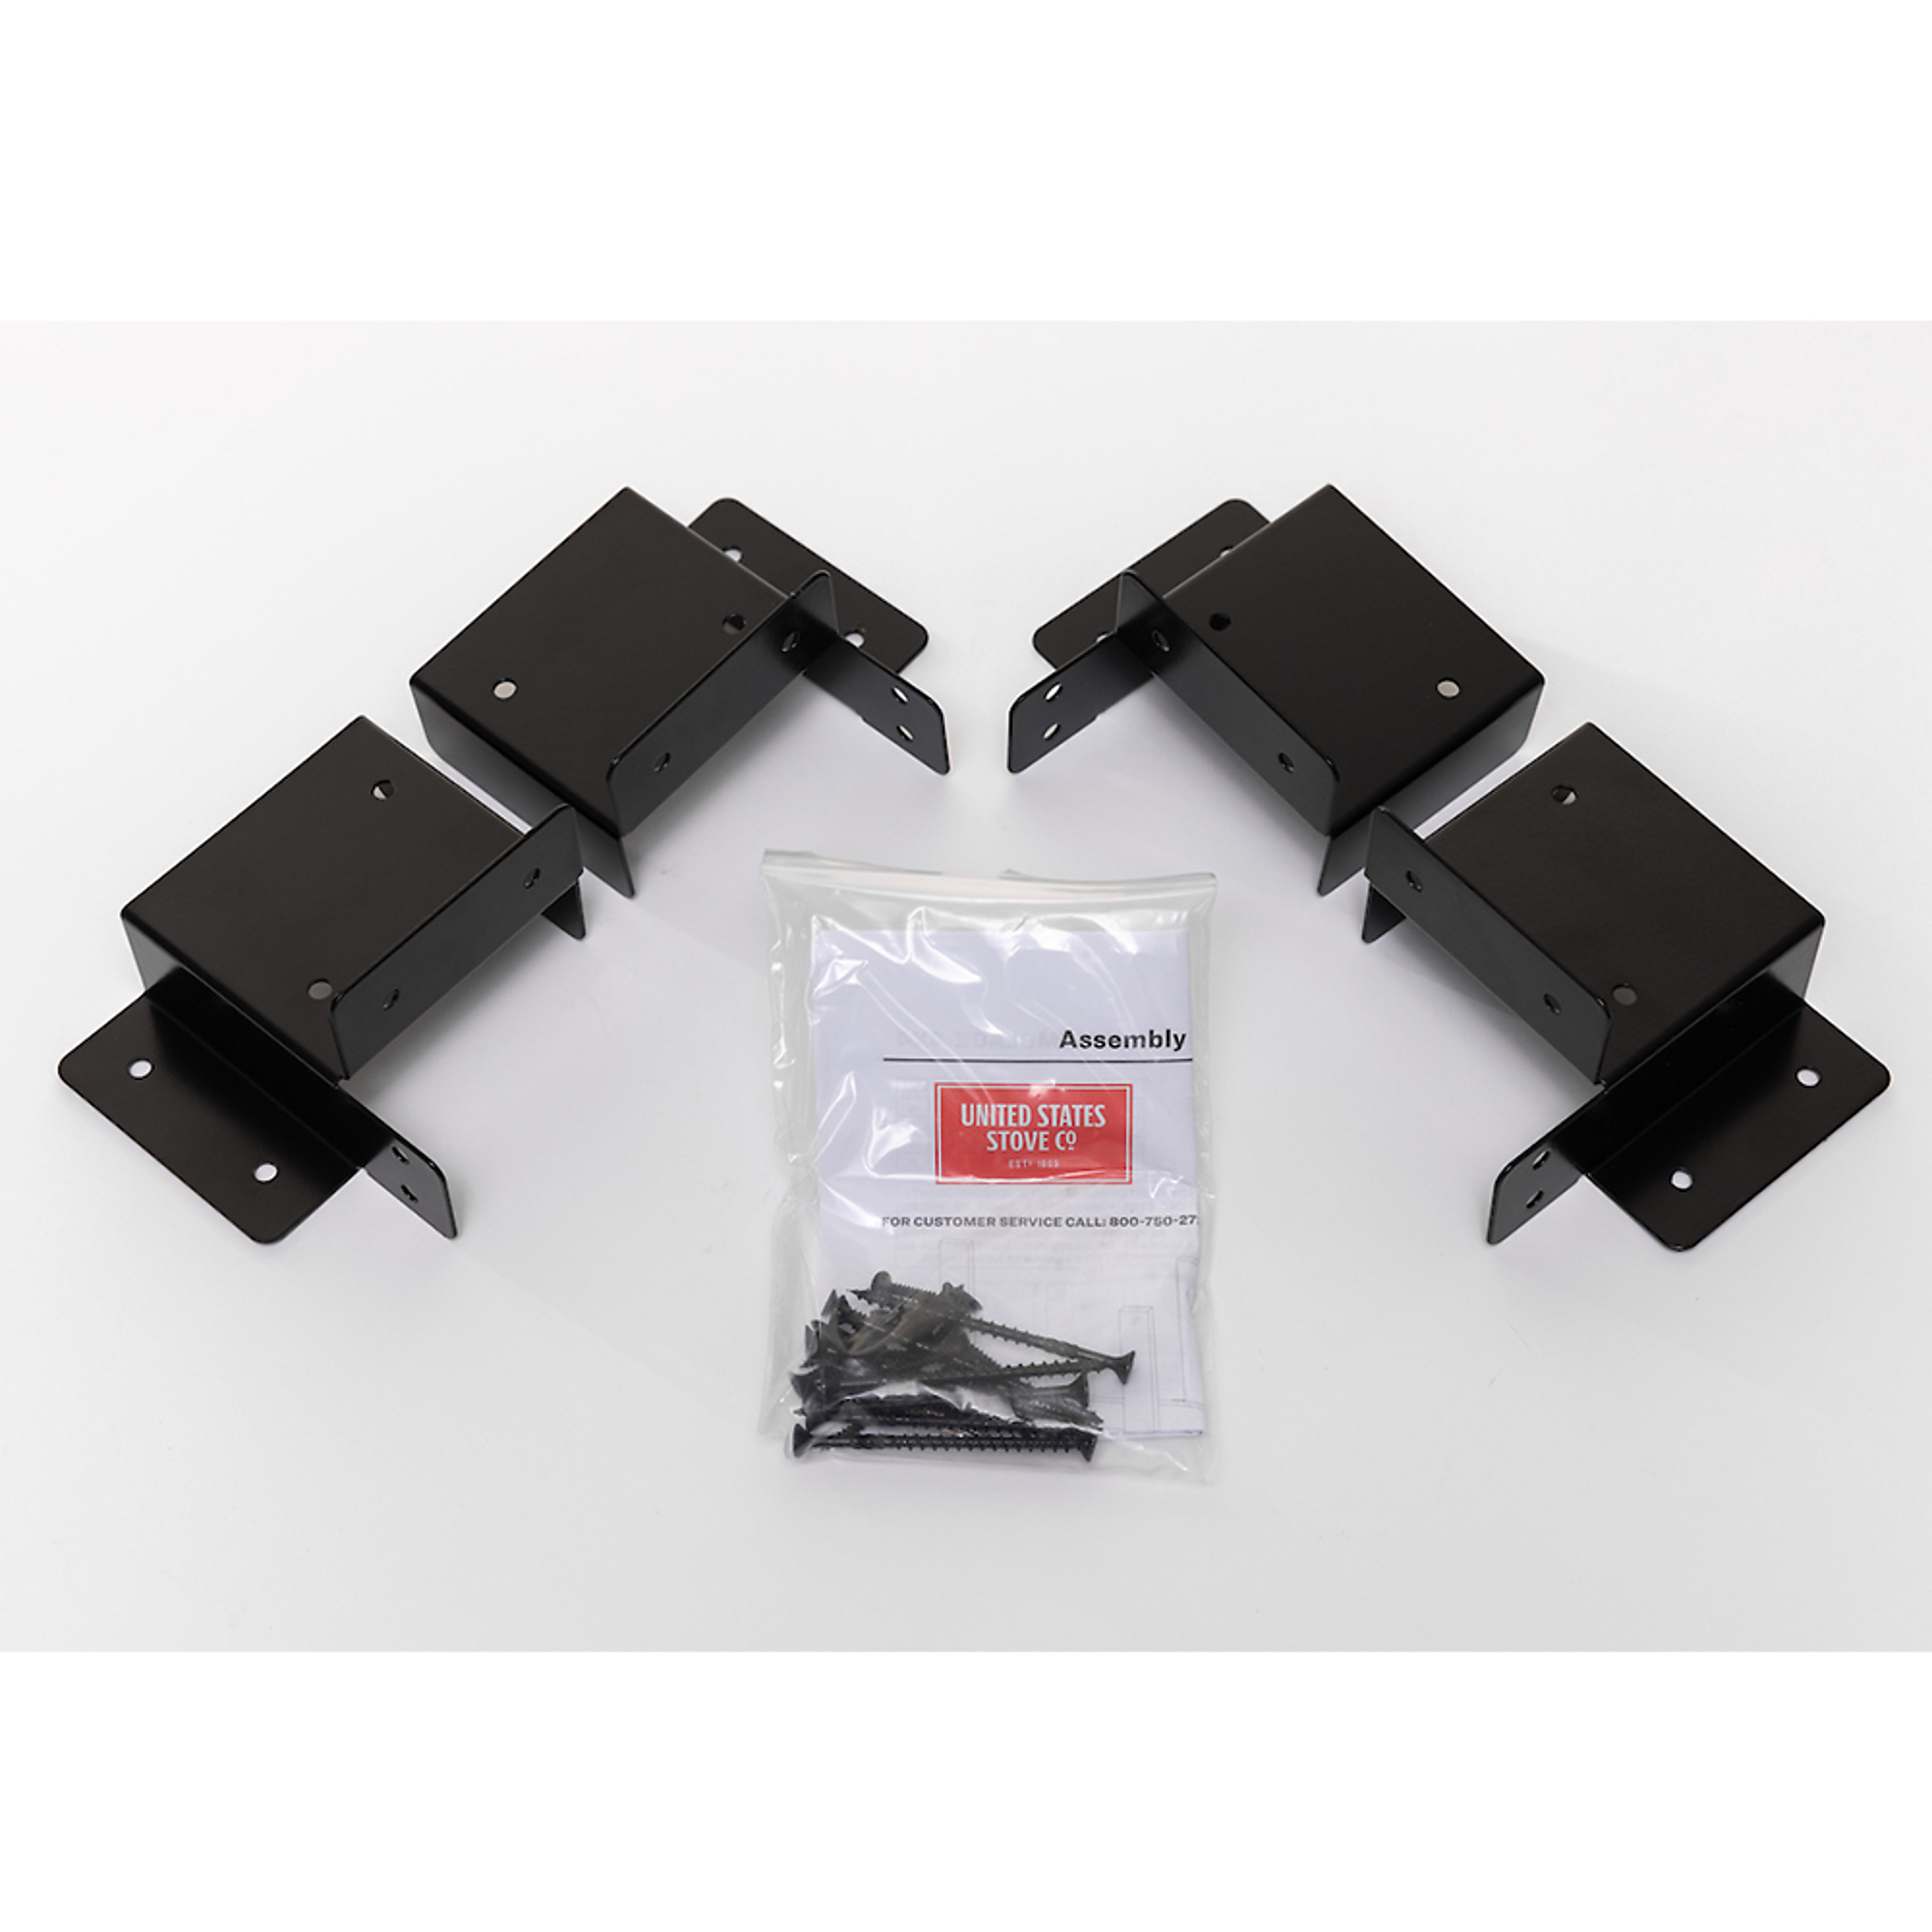 US Stove Company, Log Rack Brackets Kit with Adjustable Uprights, Color Black, Material Steel, Model USLRK